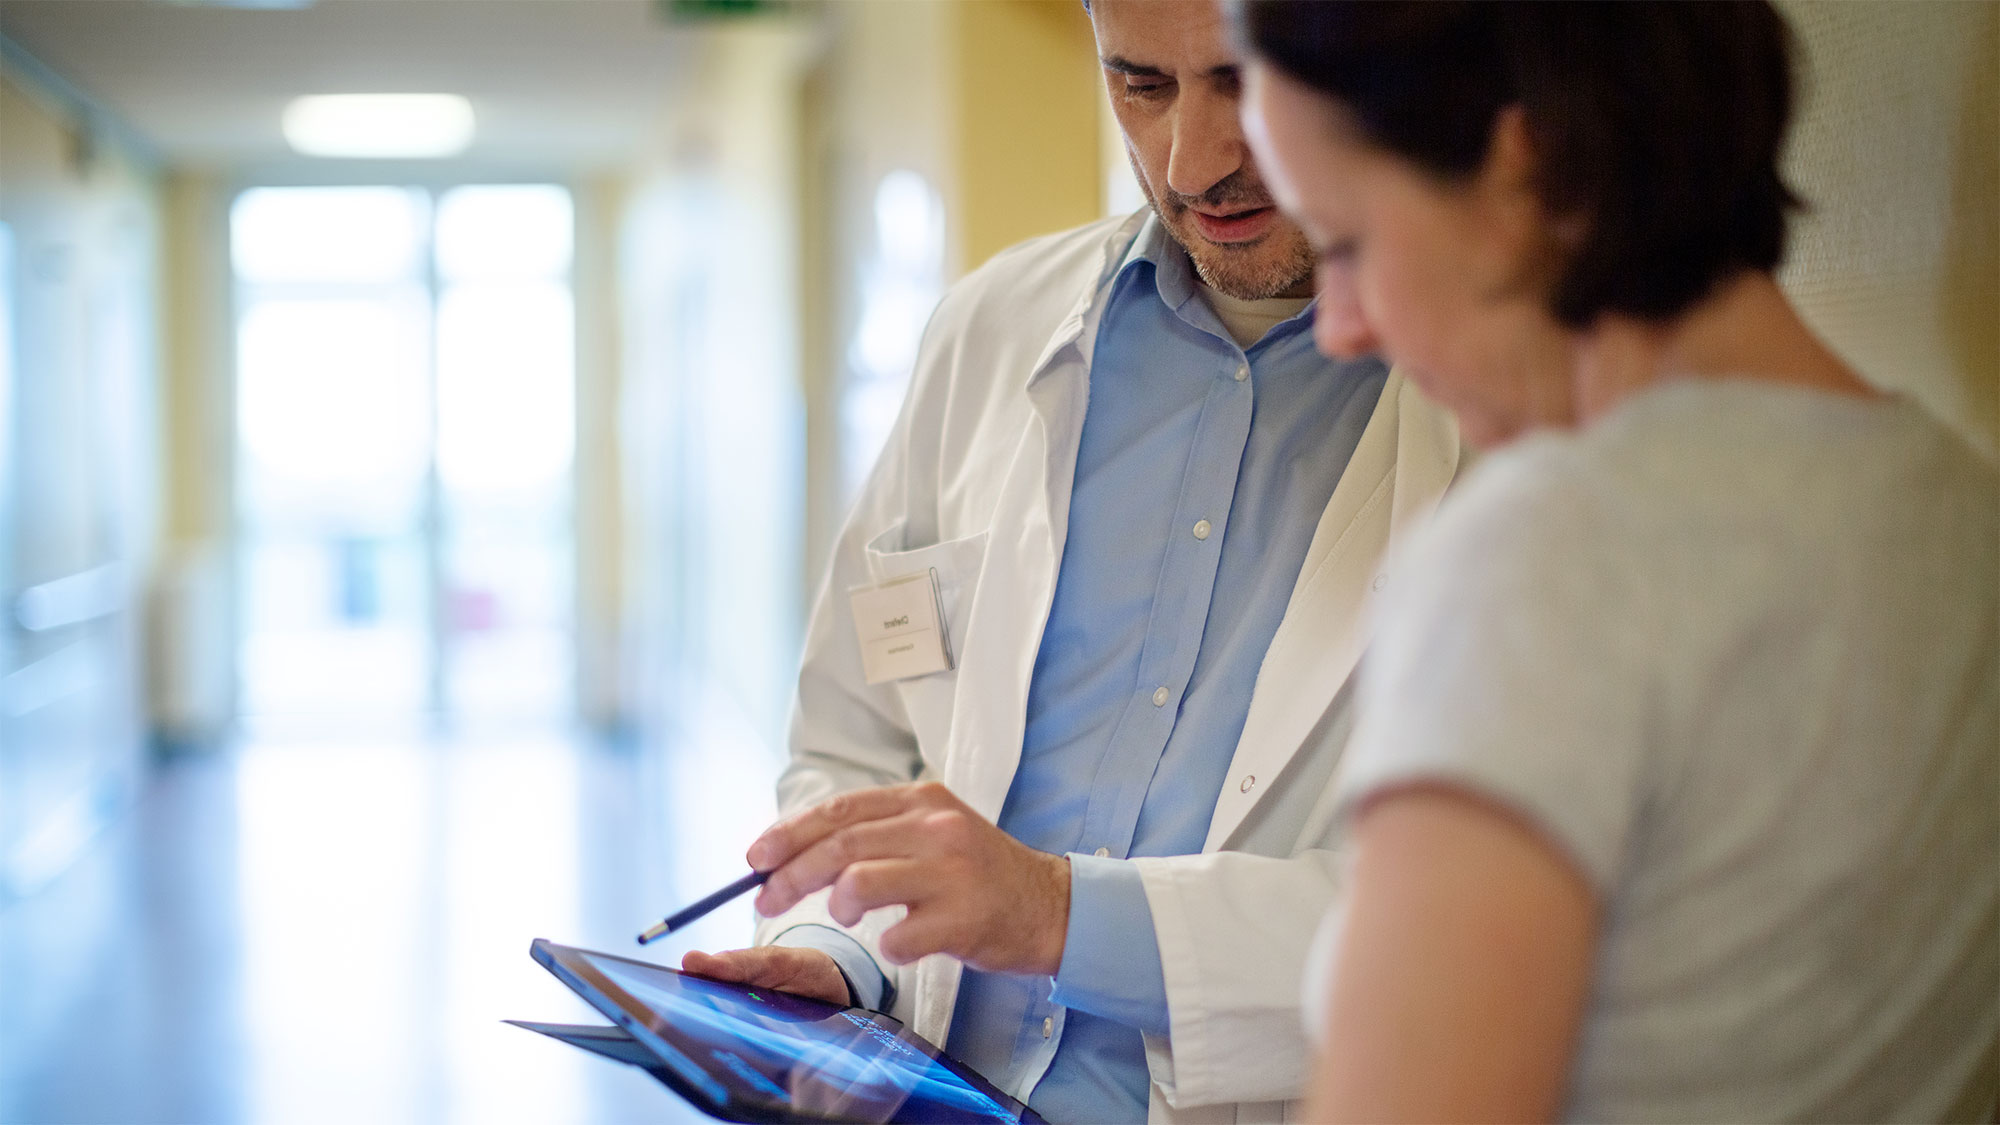 Mediziner bespricht mit Patientin Diagnose mithilfe des iPads. Das 5G-Netz ermöglicht eine Vernetzung in Echtzeit und hilft damit Patientinnen und Patienten.